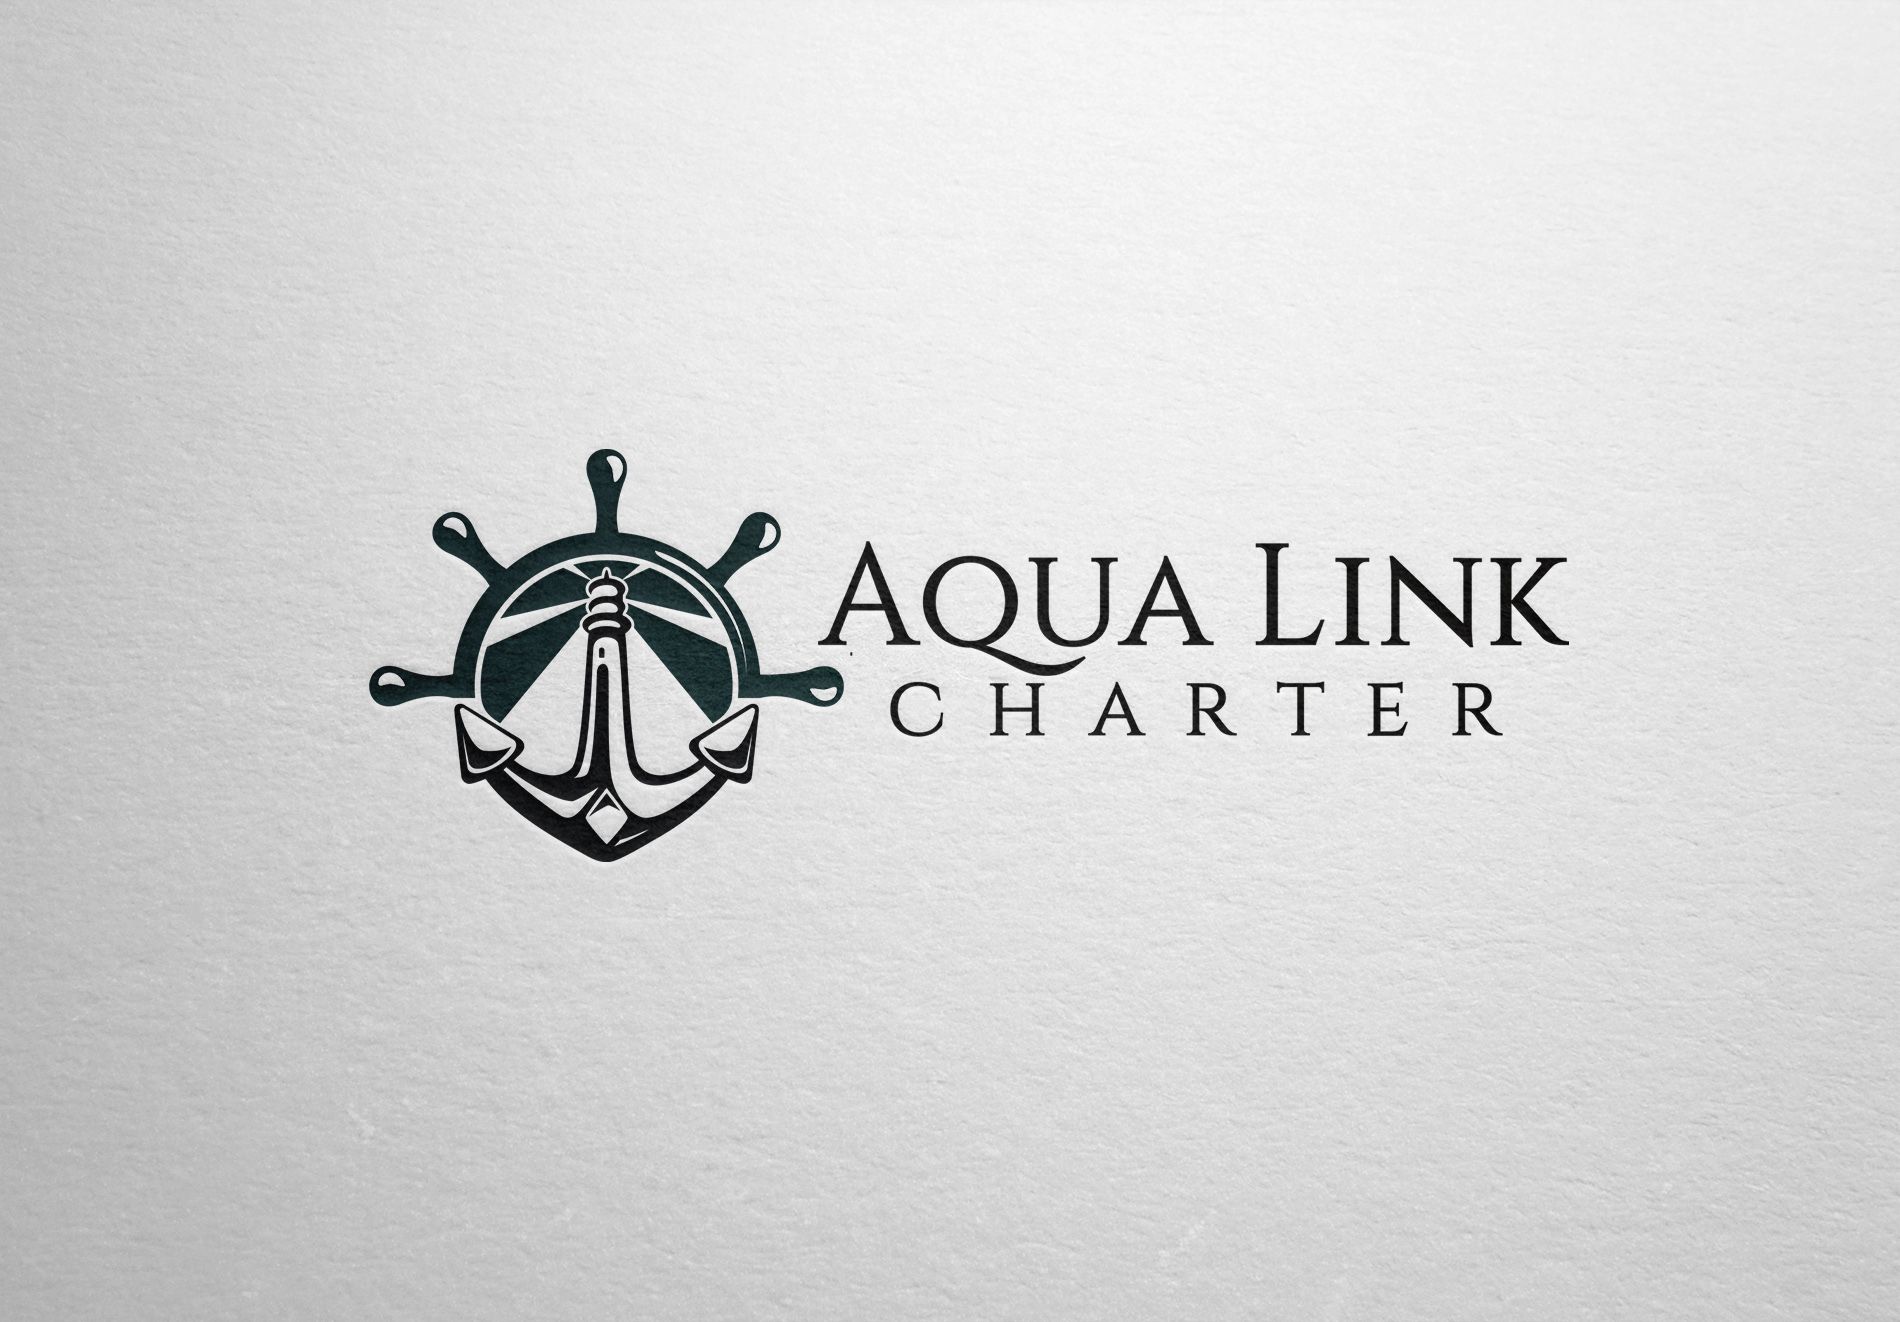 Аренда (чартер) парусных яхт - Aqua Link Charter - дизайнер La_persona